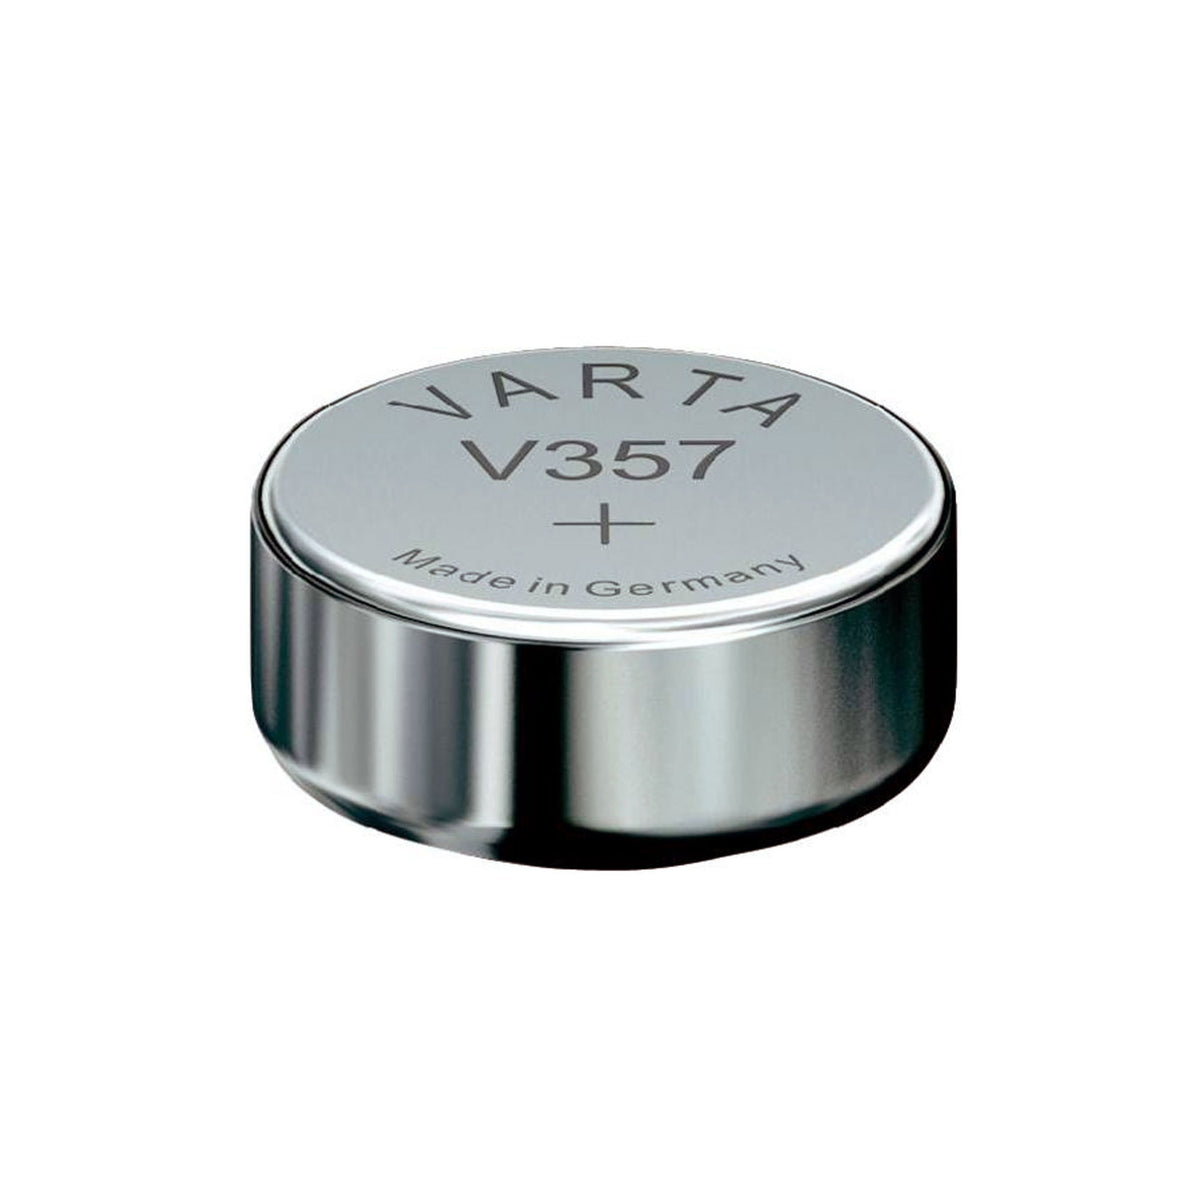 Varta V357 Battery — Glazer's Camera Inc